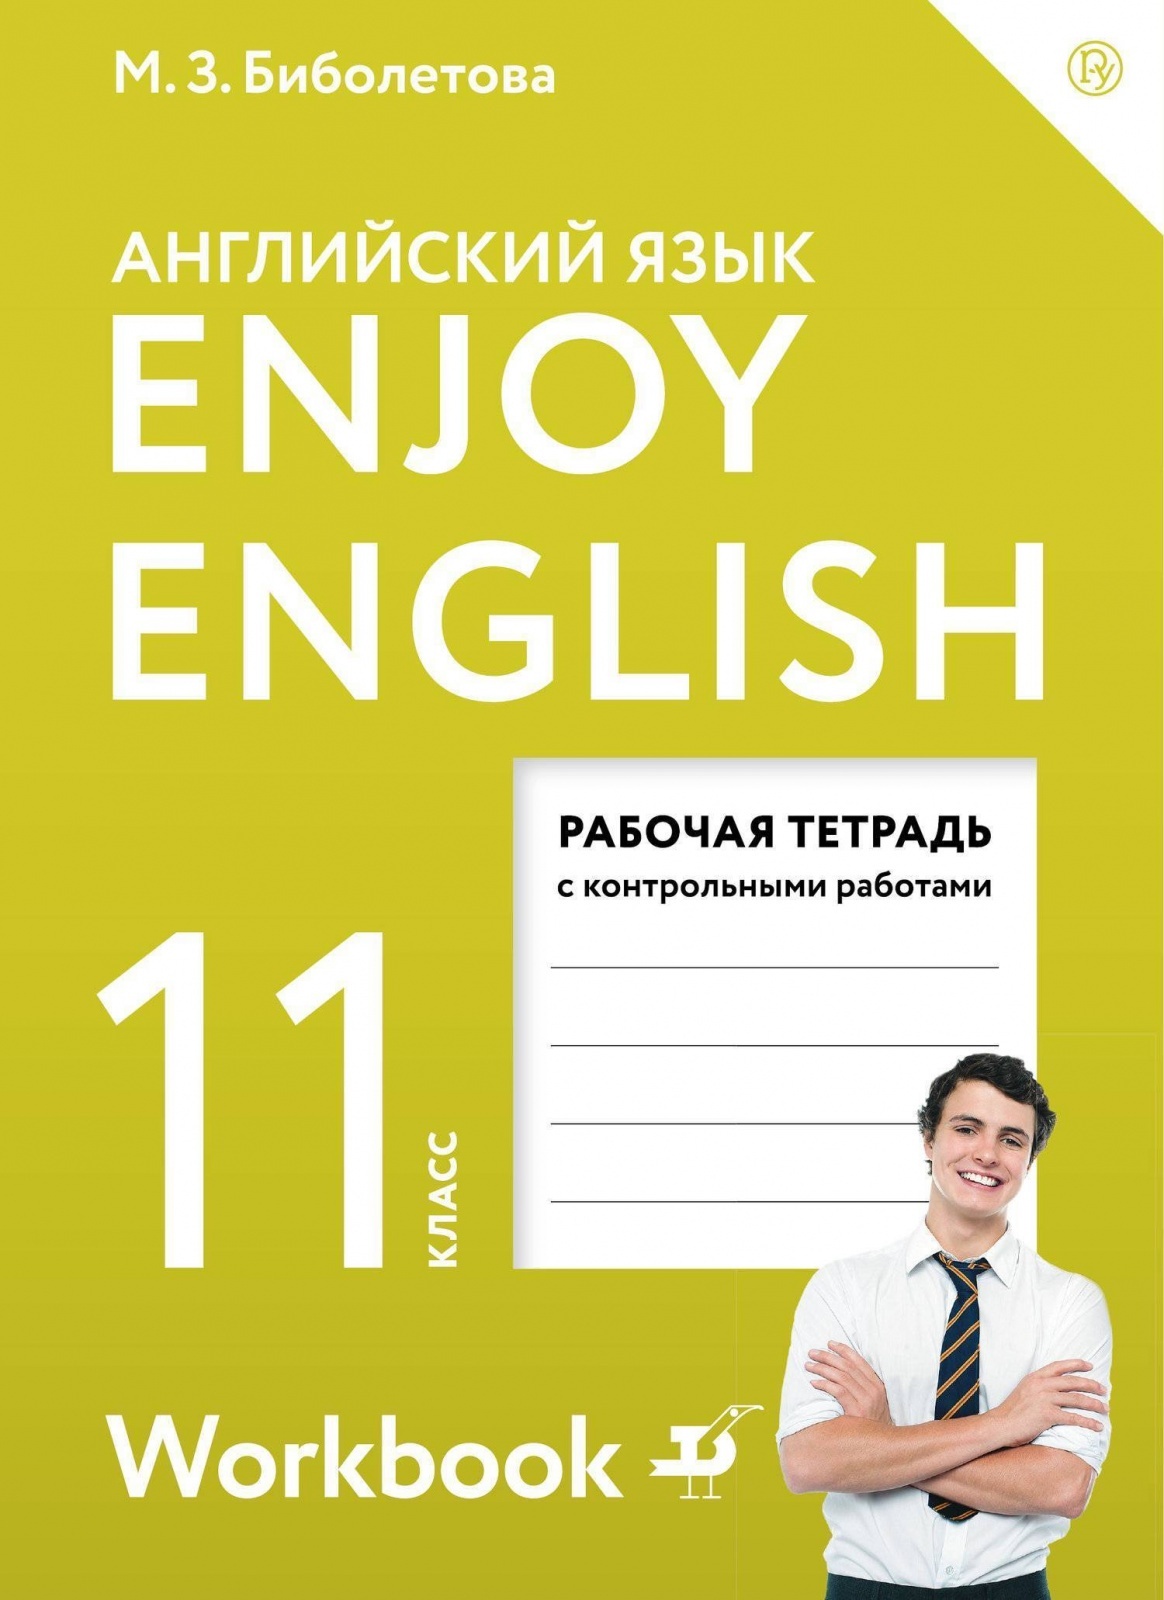 Английский 11 класс spotlight 2019. Enjoy English 11 класс. Английский язык enjoy English. Enjoy English 11 класс рабочая тетрадь. Английский язык 11 класс рабочая тетрадь.